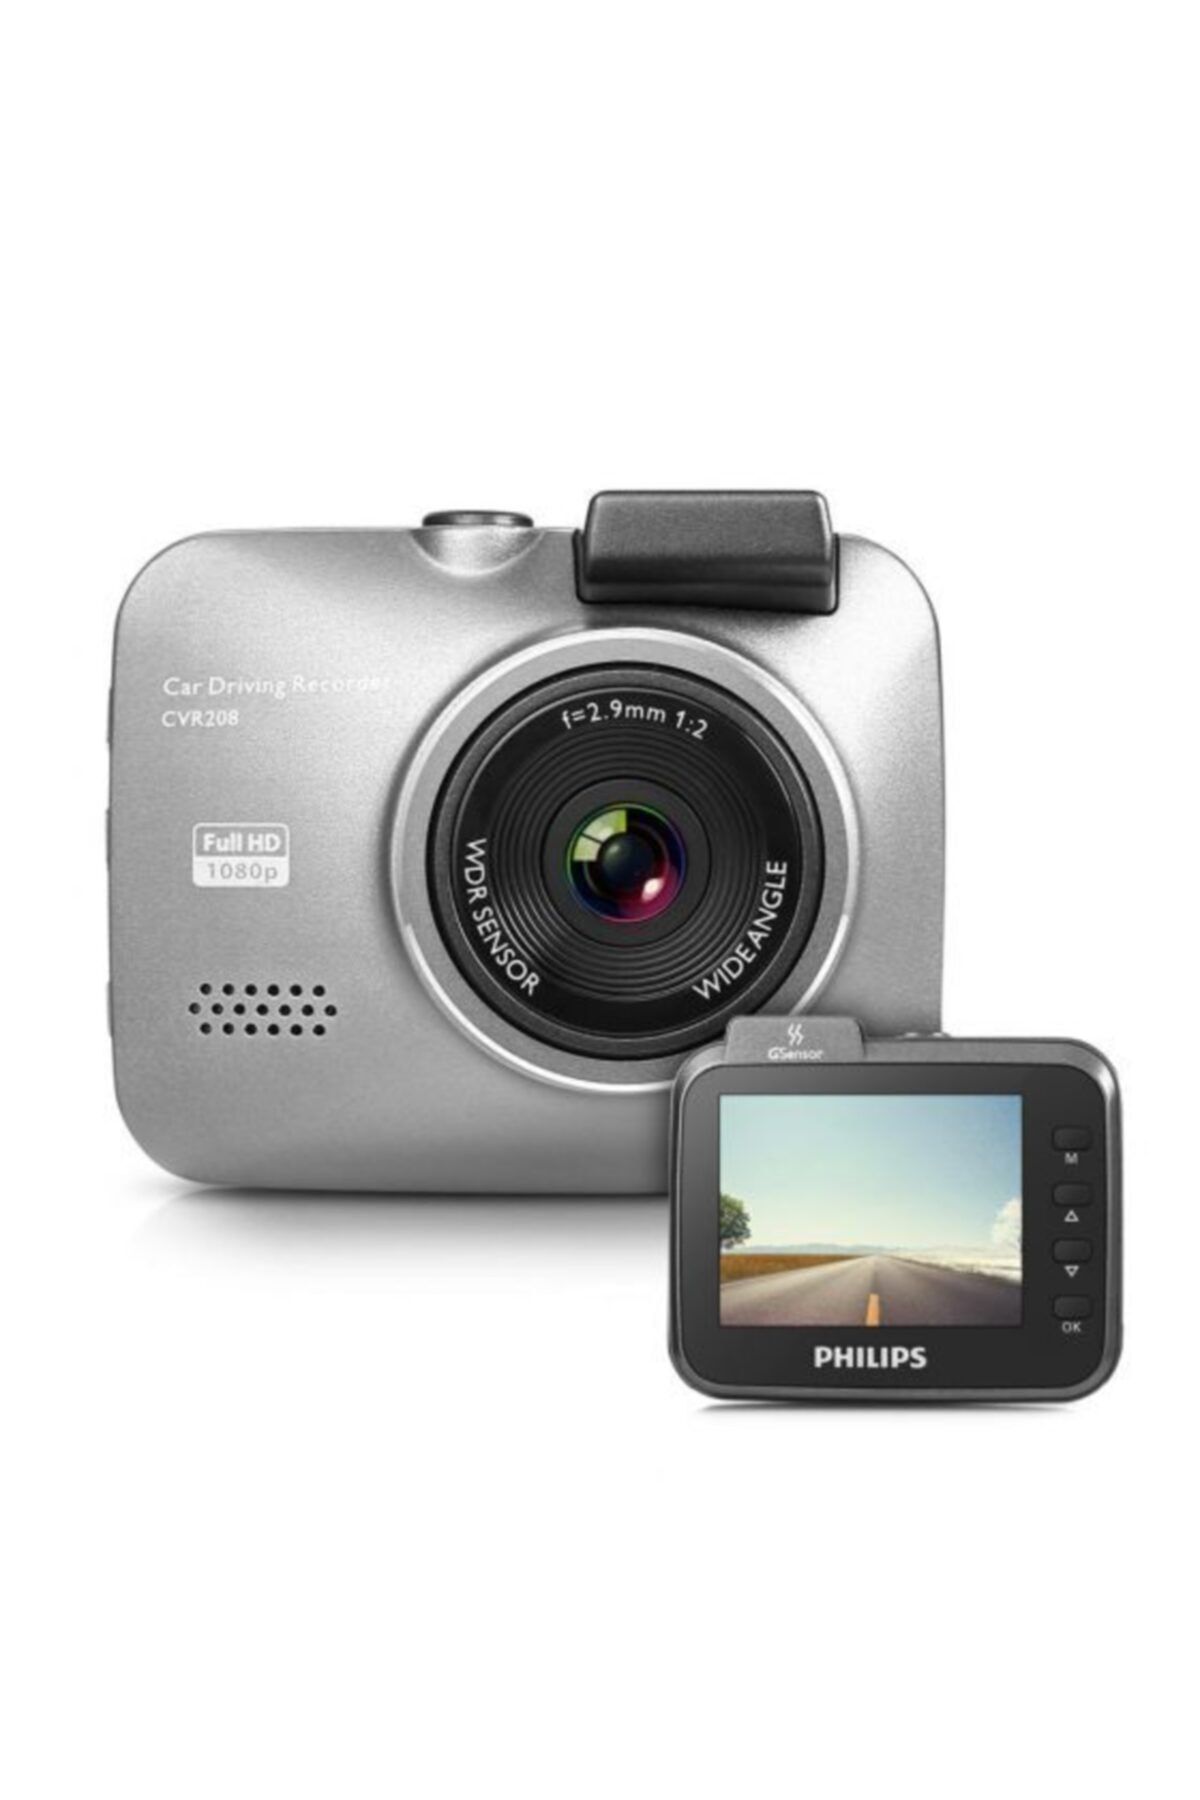 Philips Cvr208 Full Hd 1080p Akıllı Araç Kamerası